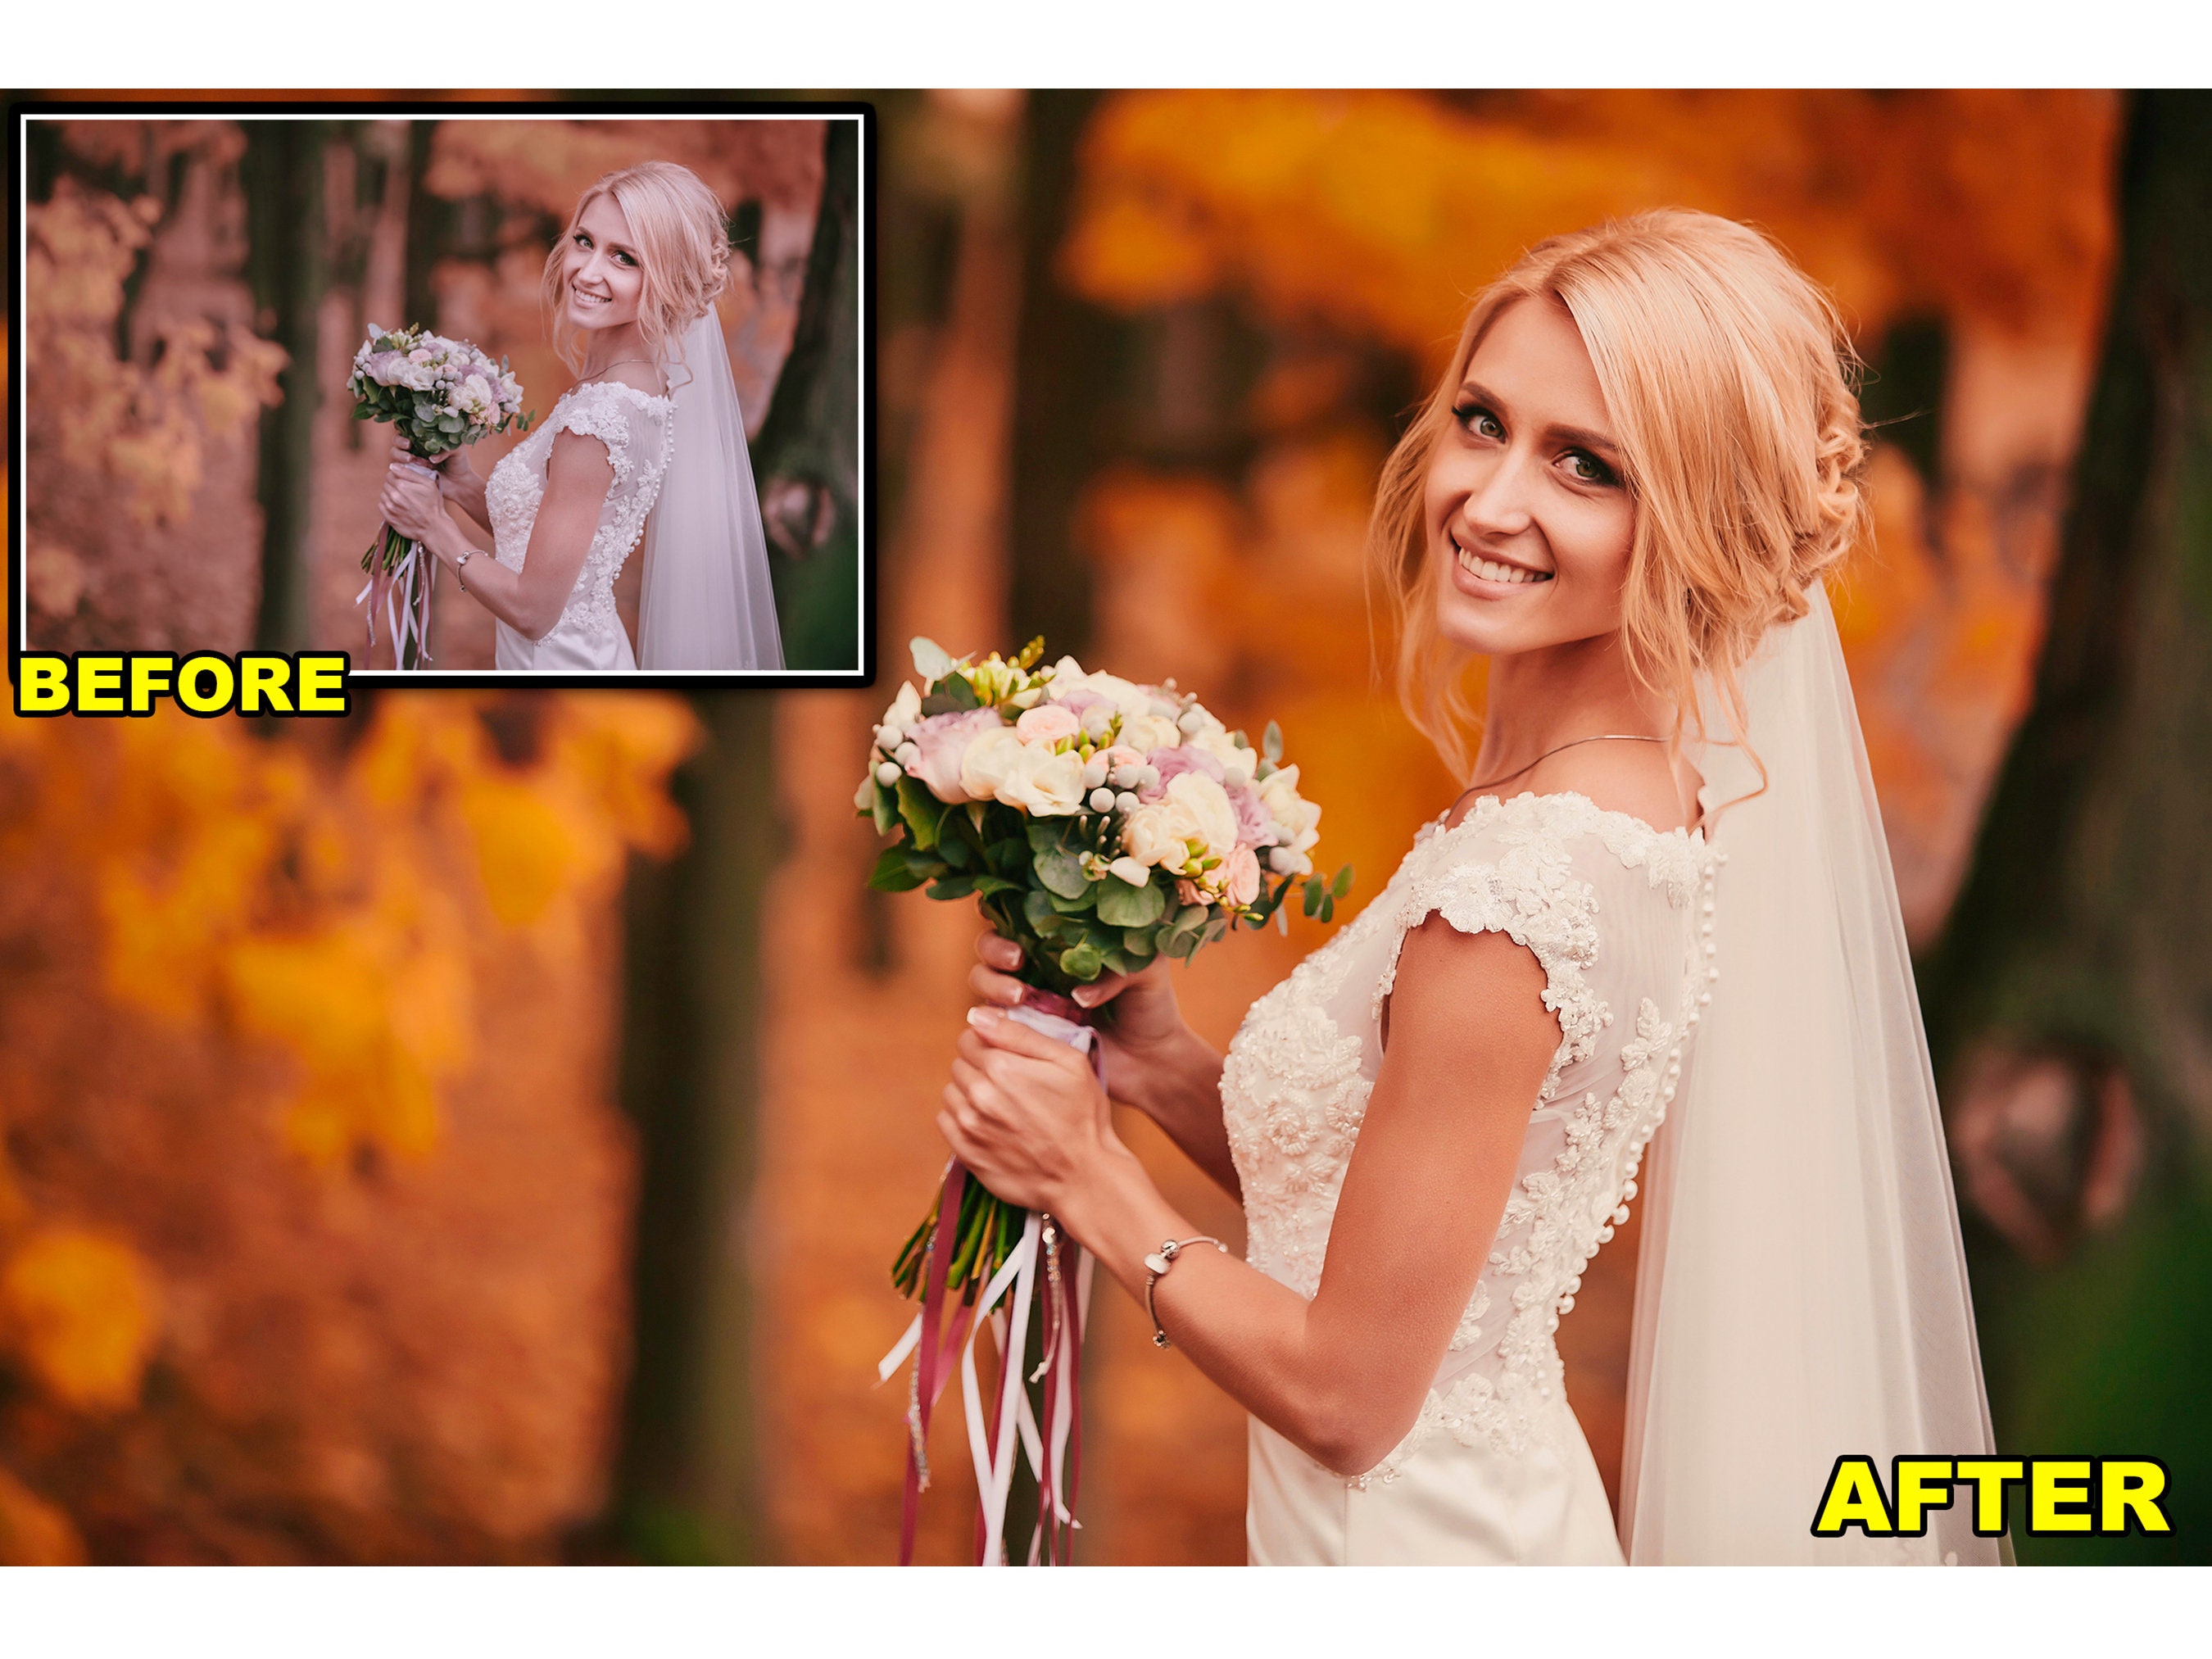 Wedding Photo Editing Customize Photo Edit Bride Room Latest - Etsy